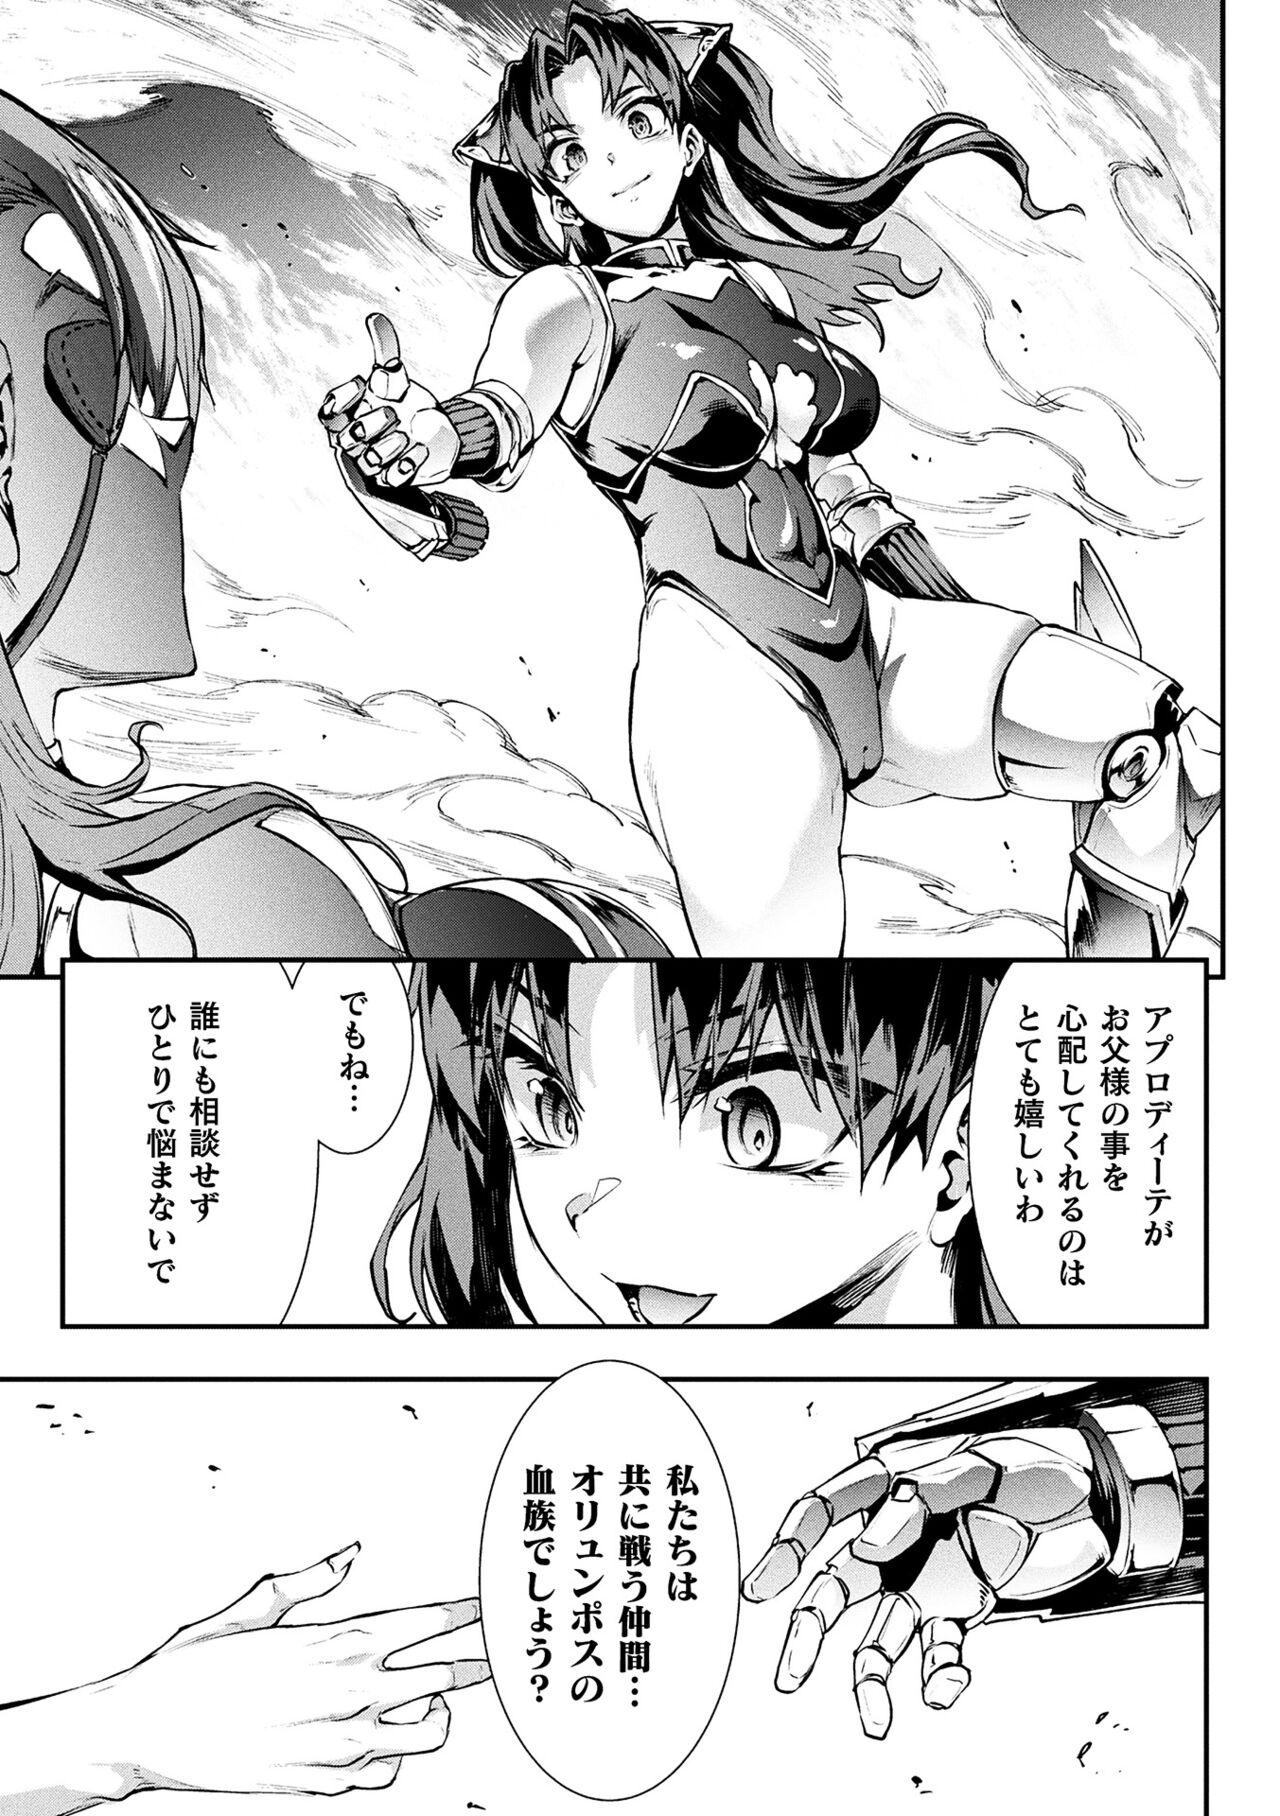 [Erect Sawaru] Raikou Shinki Igis Magia III -PANDRA saga 3rd ignition- 4 [Digital] 70